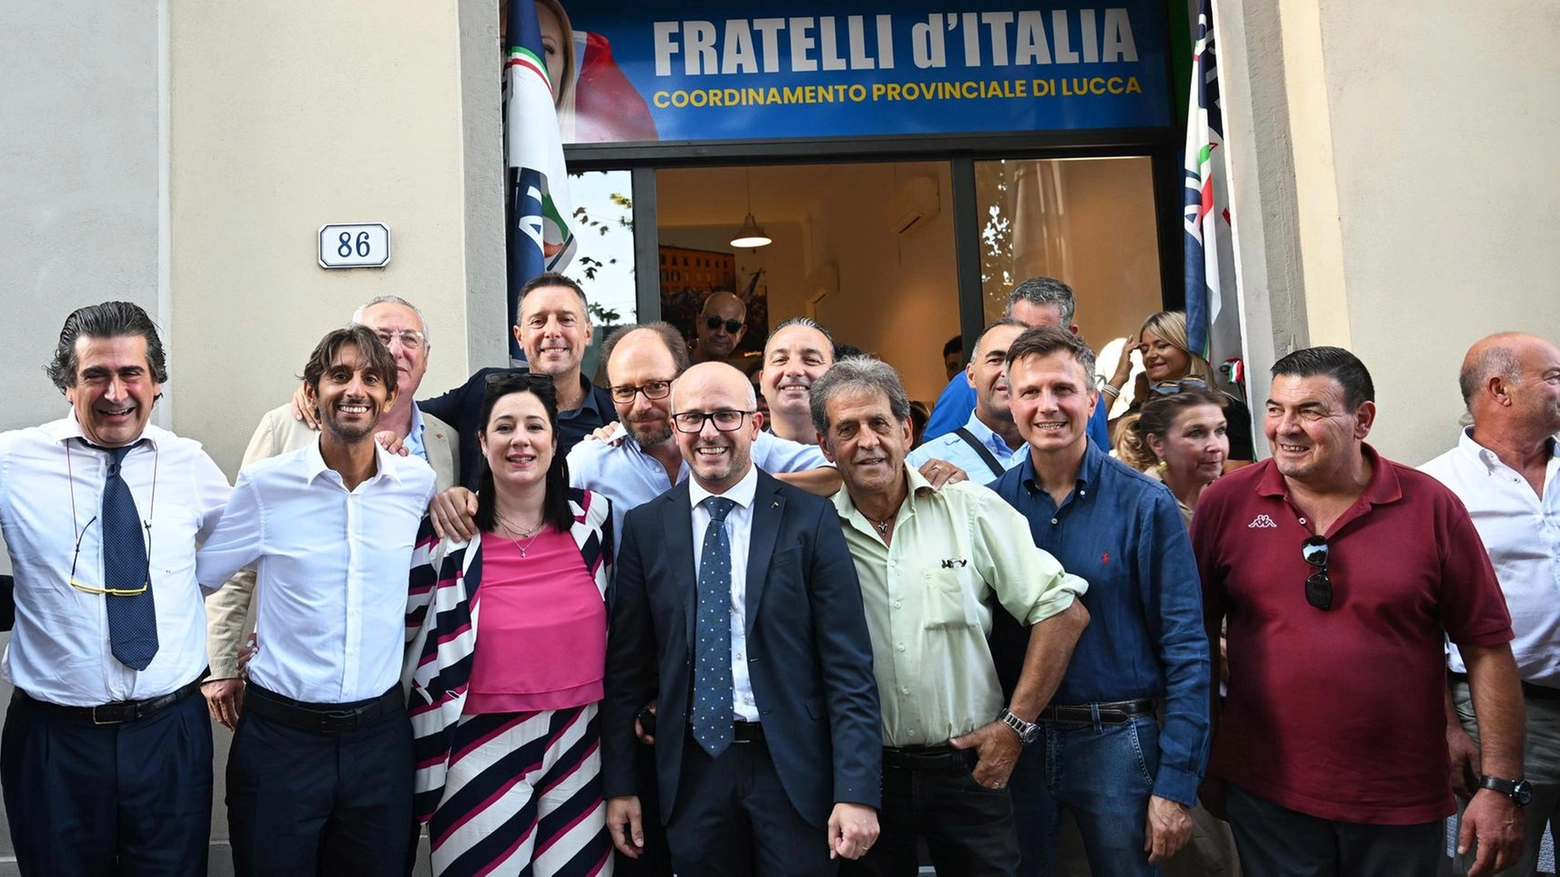 

Taglio del nastro della sede FdI a Lucca: sala gremita di persone